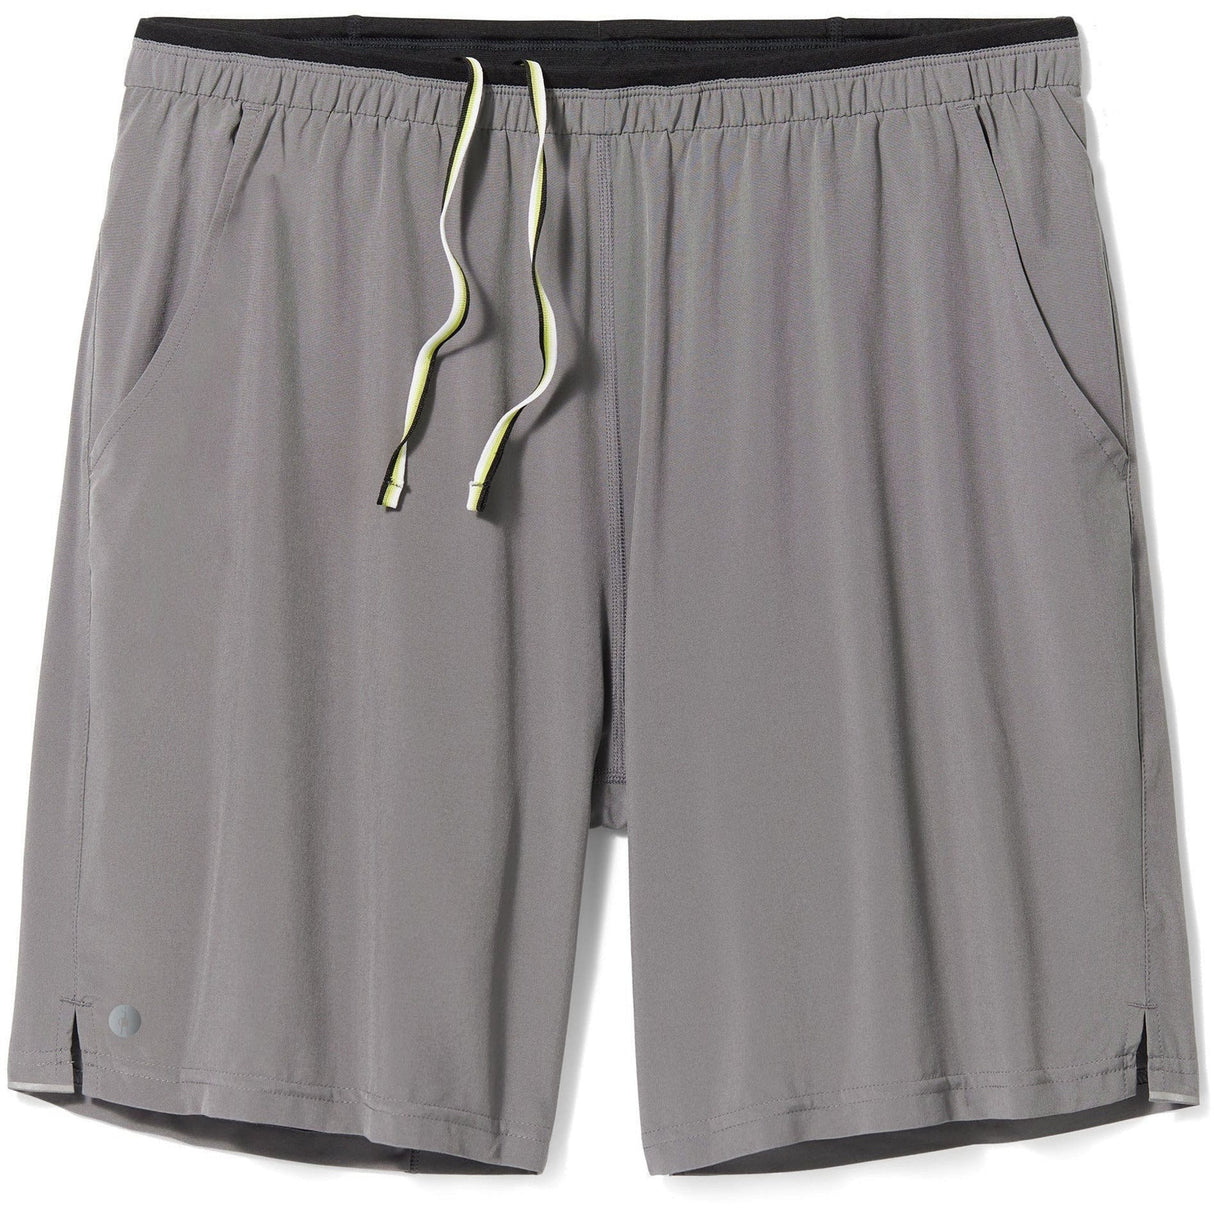 Smartwool Mens Active Lined 8" Shorts  -  Medium / Medium Gray